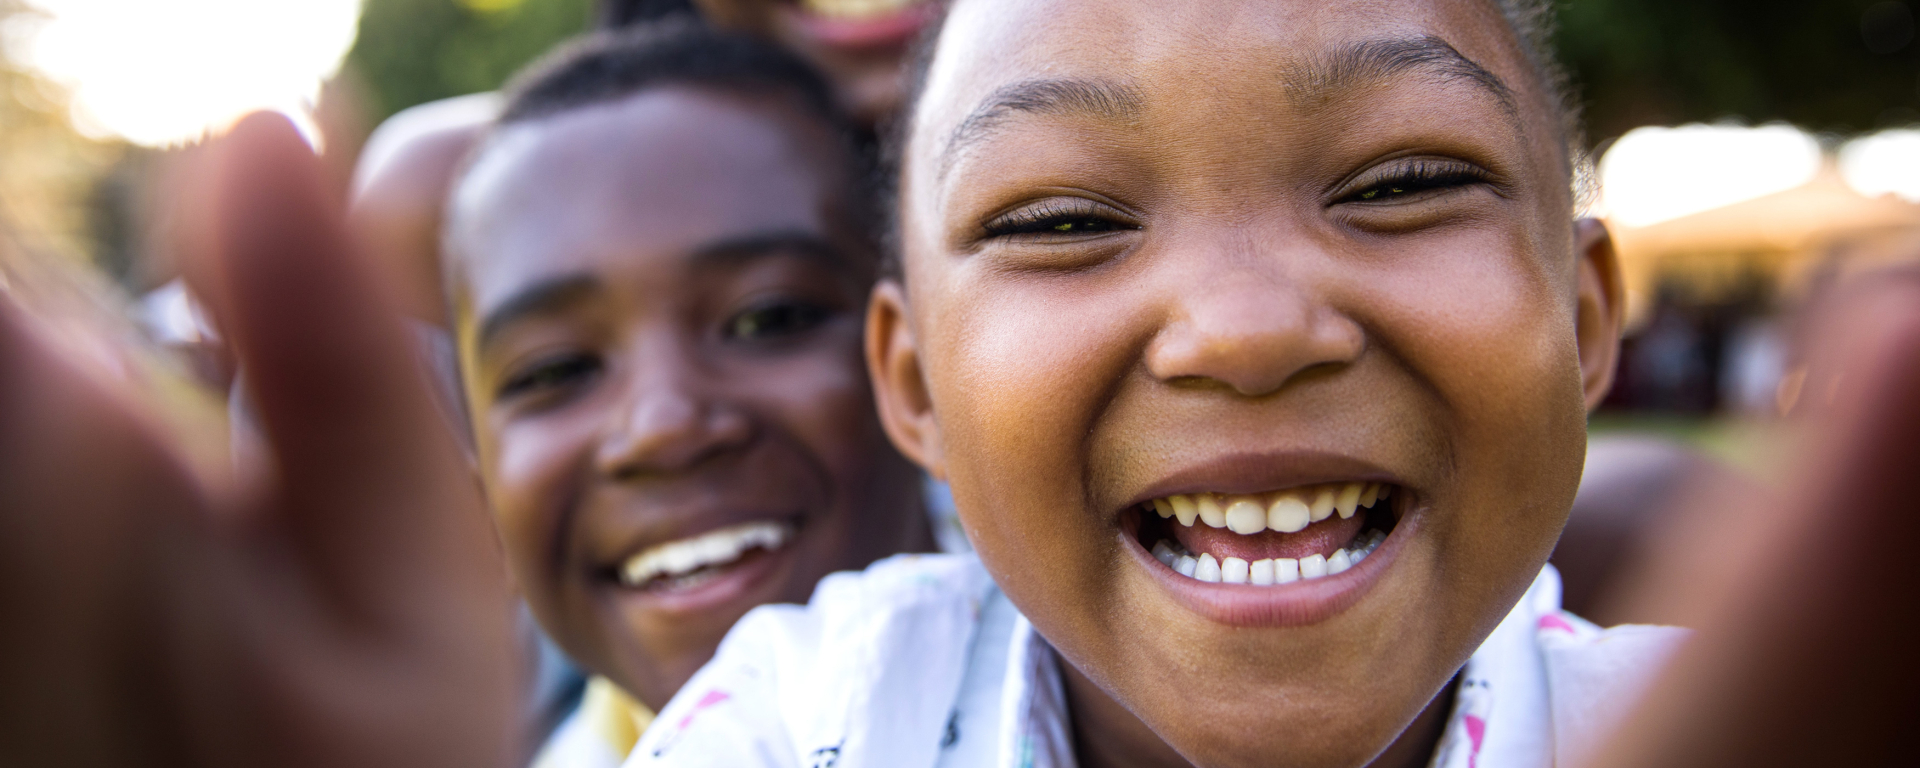 Smiling African American children candid outdoor selfie